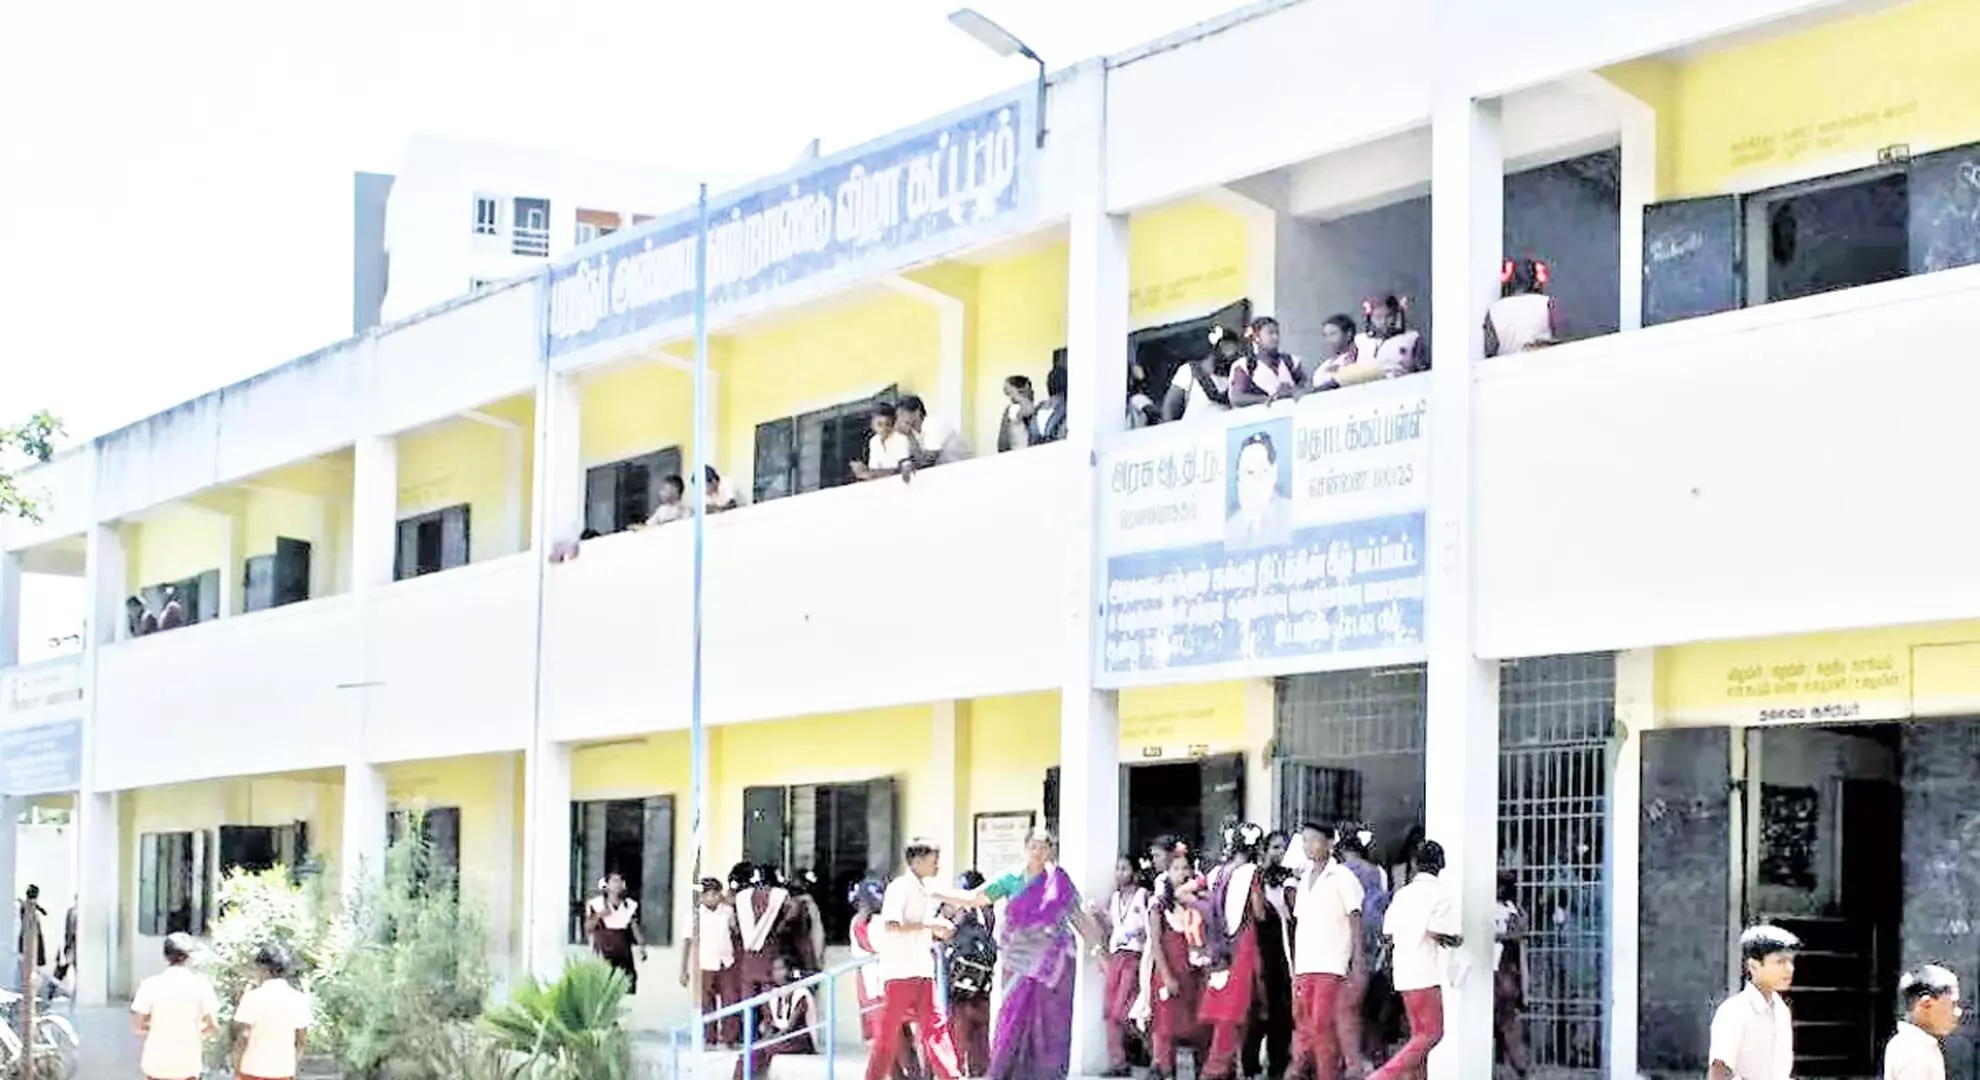 तमिलनाडु में SC स्कूलों को स्कूल शिक्षा विभाग के अधीन लाने में शिक्षकों की वरिष्ठता बाधा